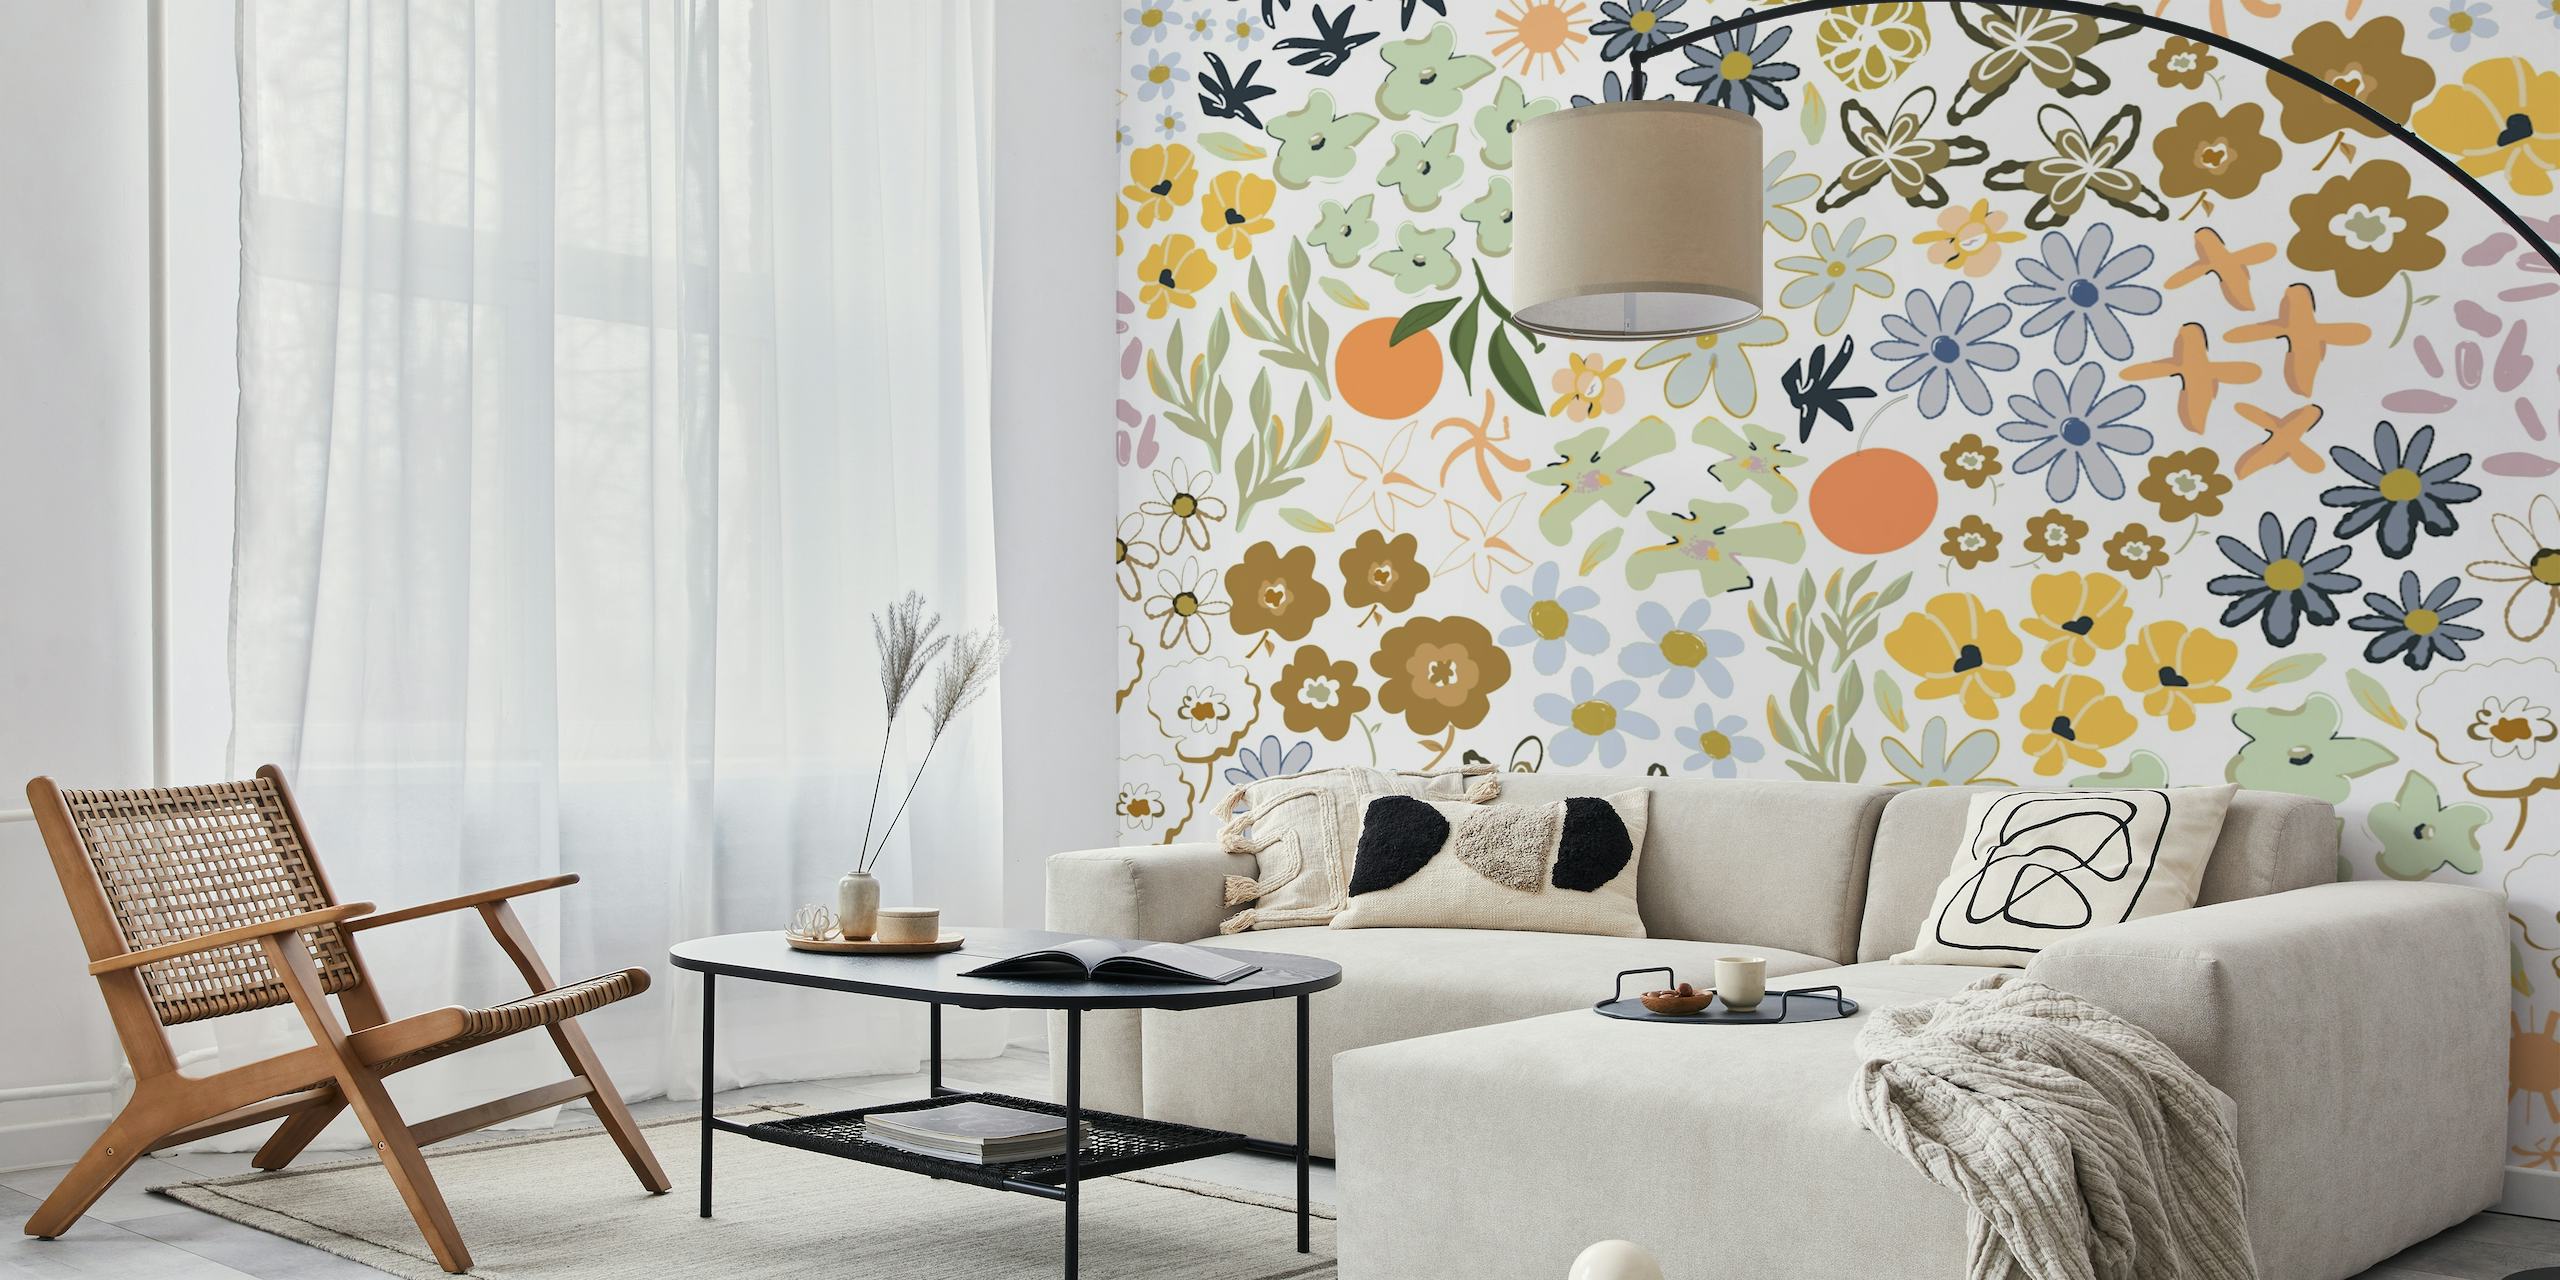 Värikäs kukkakuvioinen seinämaalaus, jossa on kukkia, hyönteisiä ja hedelmiä